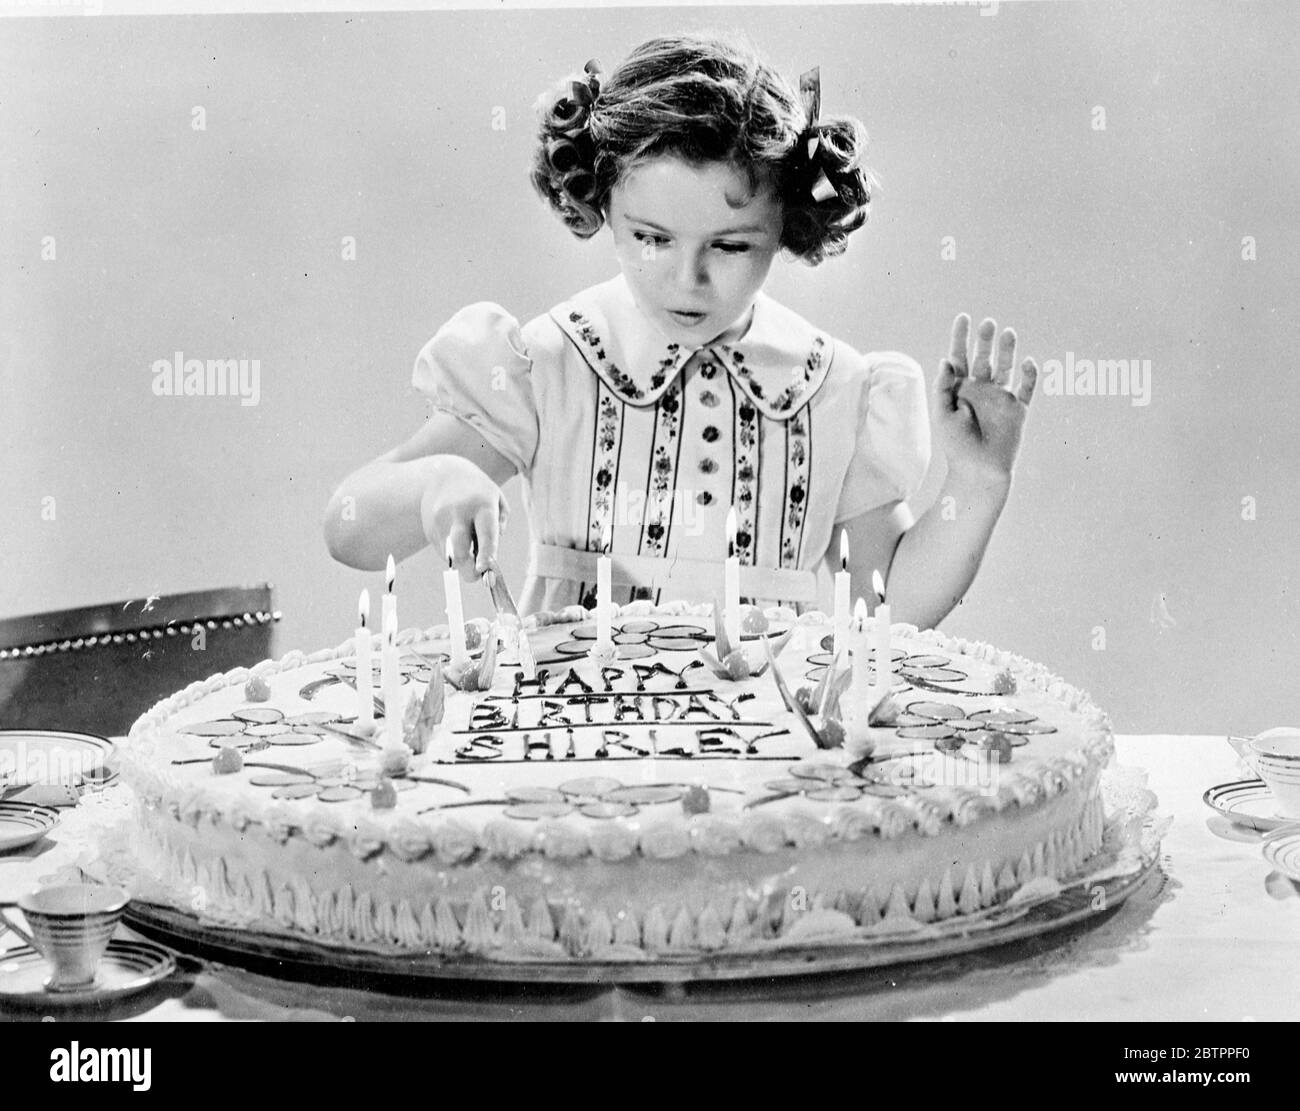 Shirley's Lucky Day. Feiert 9. Geburtstag. Shirley Temple, die Kinderfilmschauspielerin, schneidet ihren neunten Geburtstagskuchen, geschmückt mit neun Kerzen, in ihrem Hollywood-Haus. Shirley nahm sich Zeit für ihren neuen Film 'Lucky Penny', um zu feiern. Mai 1938 Stockfoto